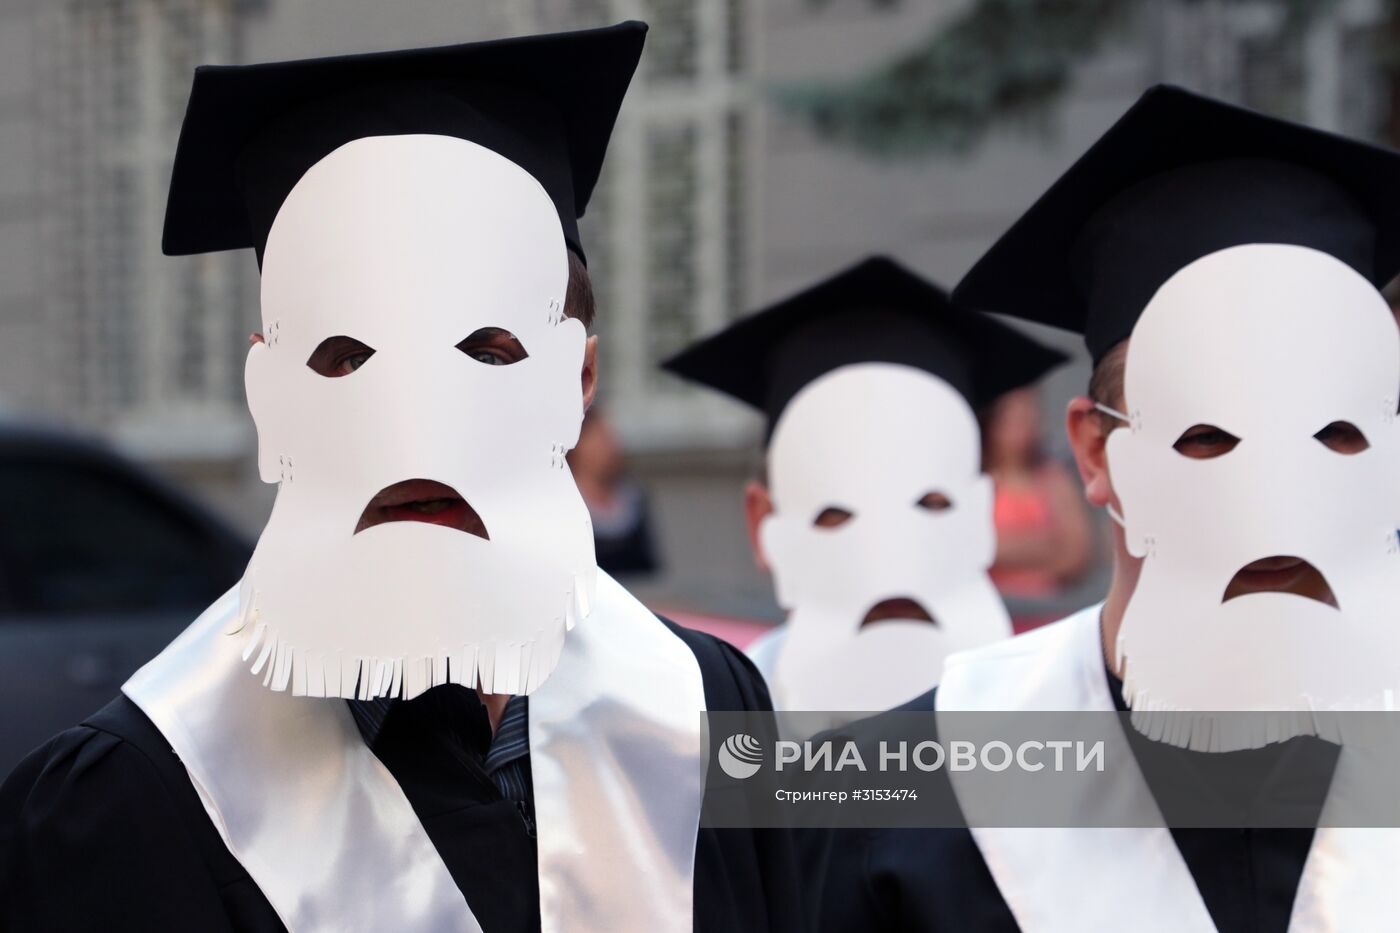 Акция во Львове против коррупции в судебной системе